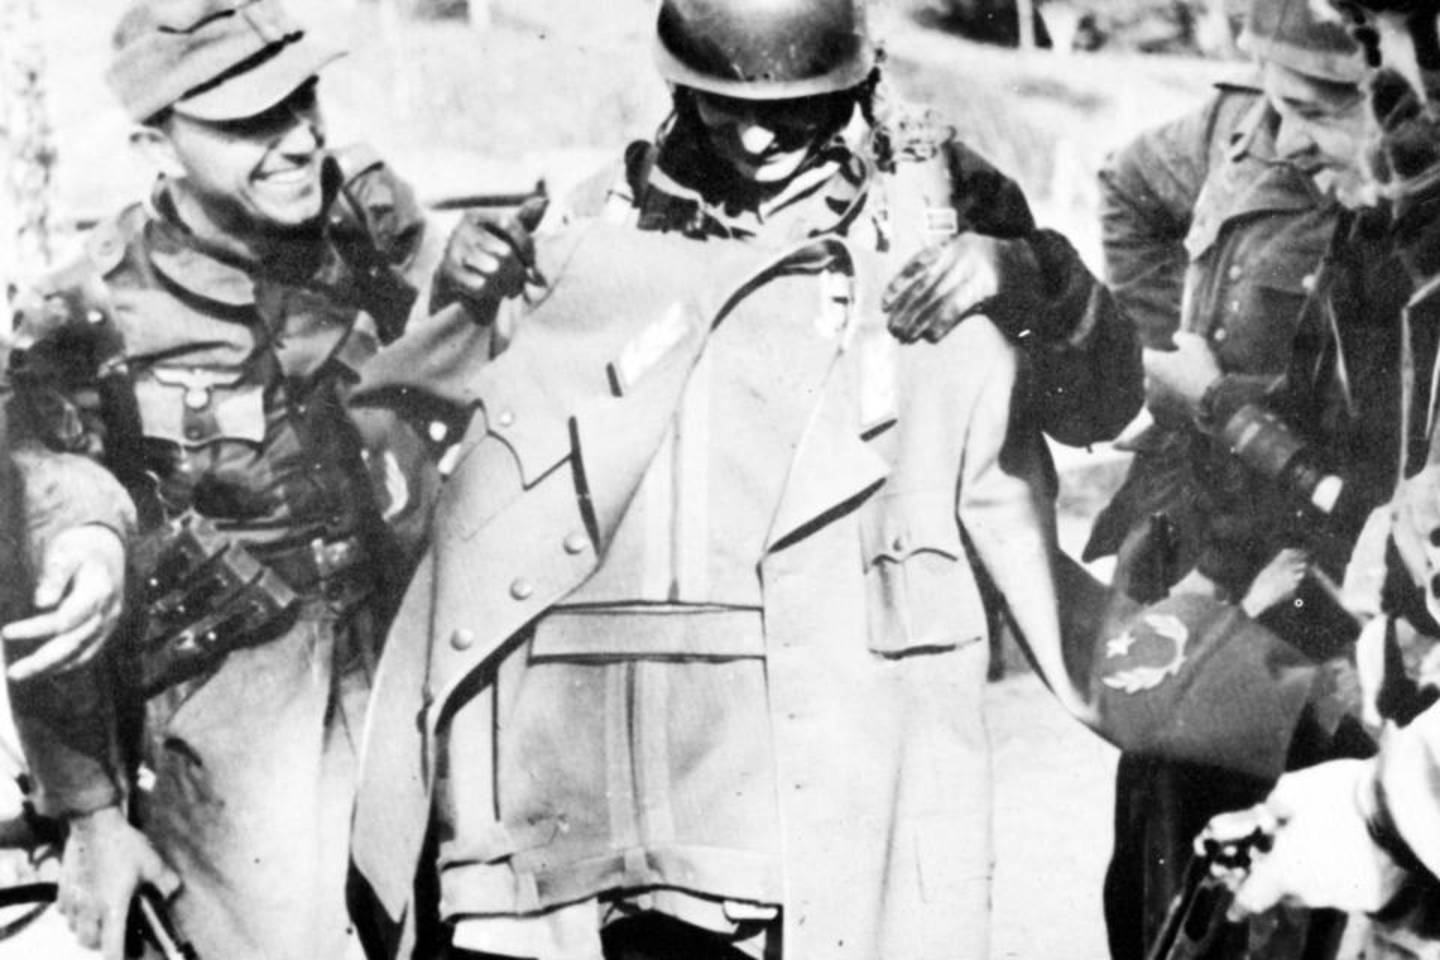 Parašiutininkai jėgeriai apžiūri naują pabėgusio partizanų vado Brozo Tito būstinėje aptiktą maršalo uniformą.<br>Iliustracija iš knygos